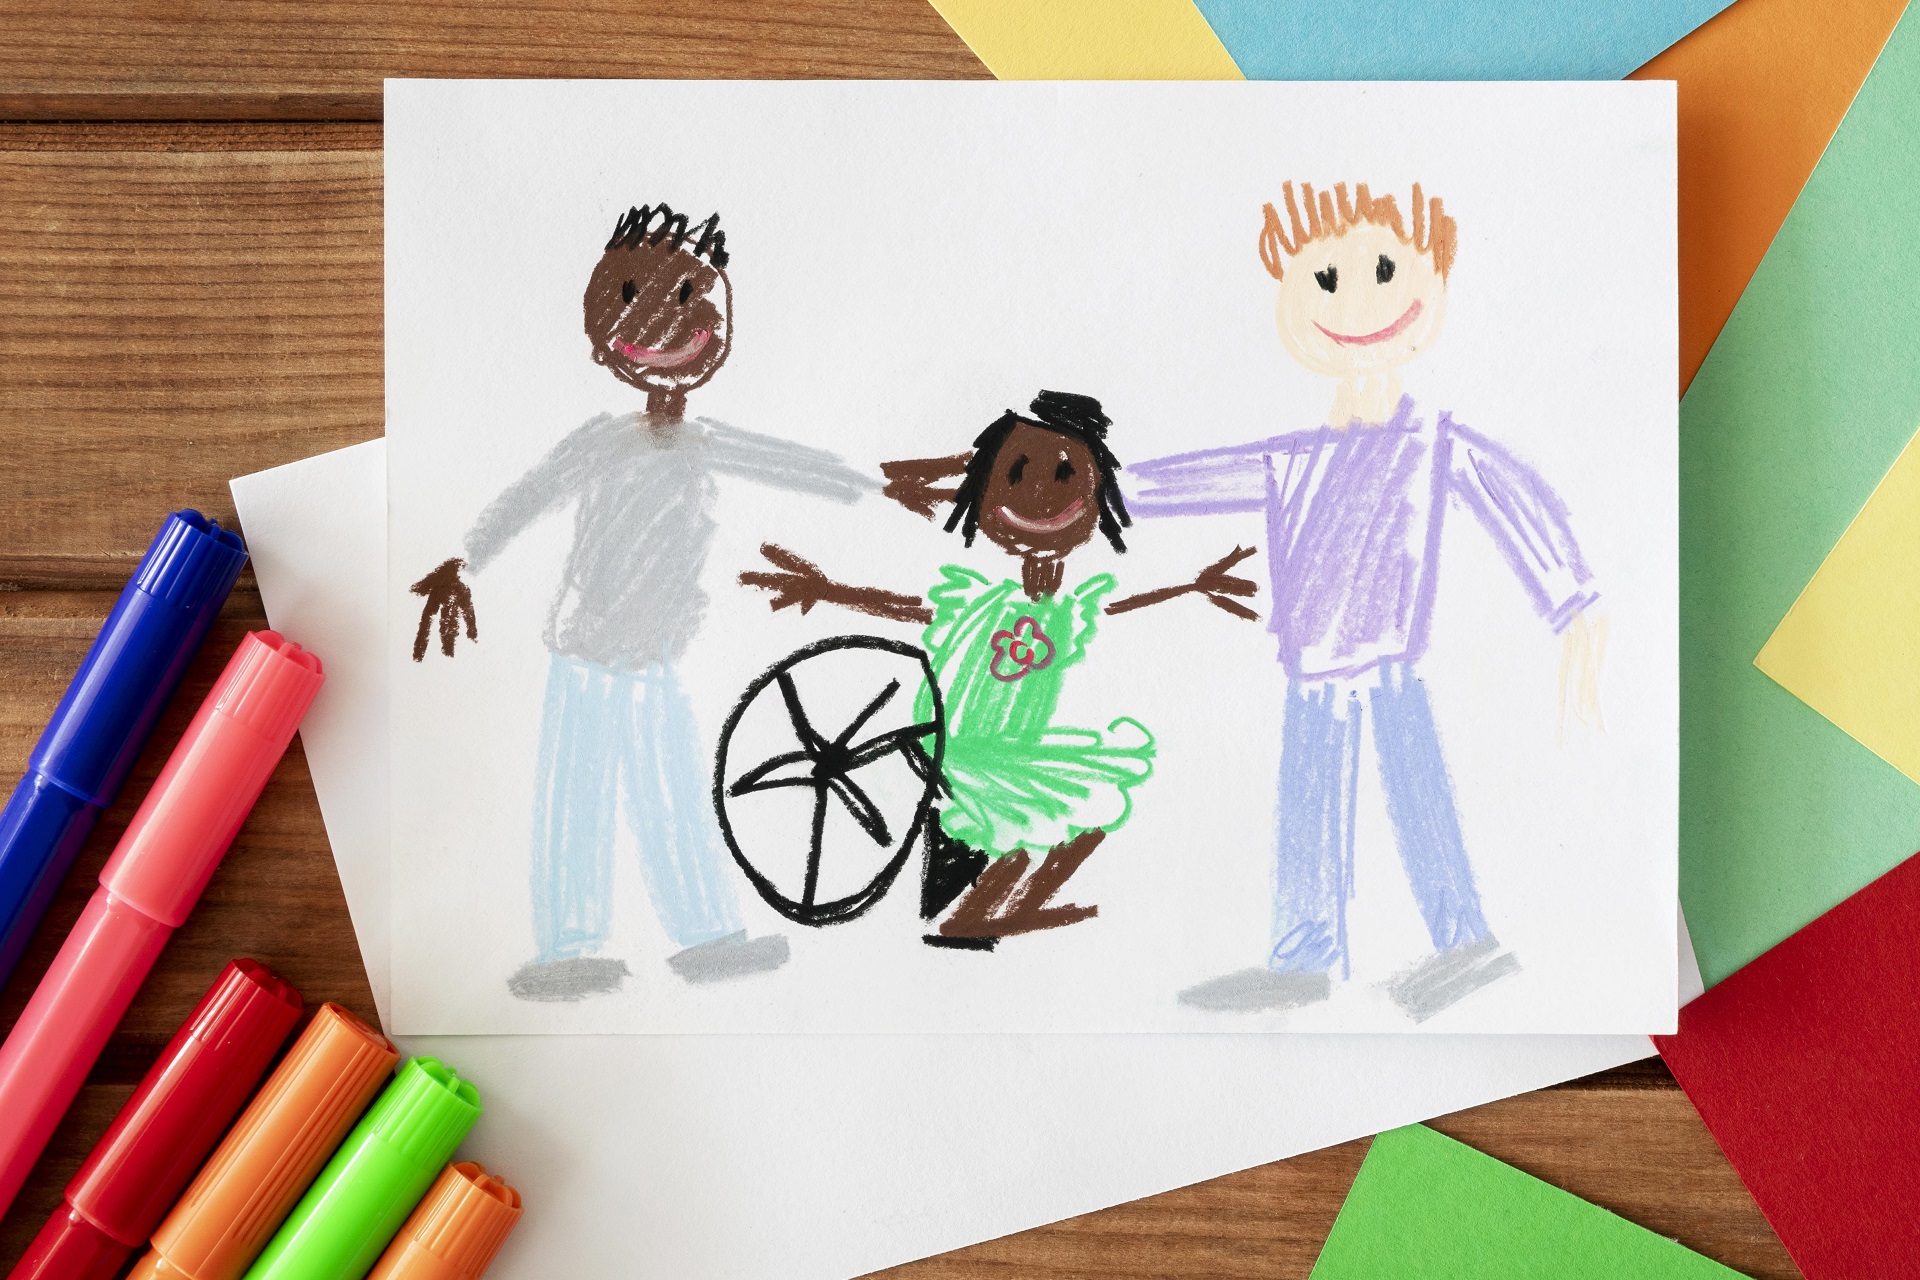 desenho feito a mão com canetas coloridas, onde está ilustrada uma família composta por dois pais de etnias diferentes e uma criança negra sentada em uma cadeira de rodas. Ambos sorriem e se abraçam